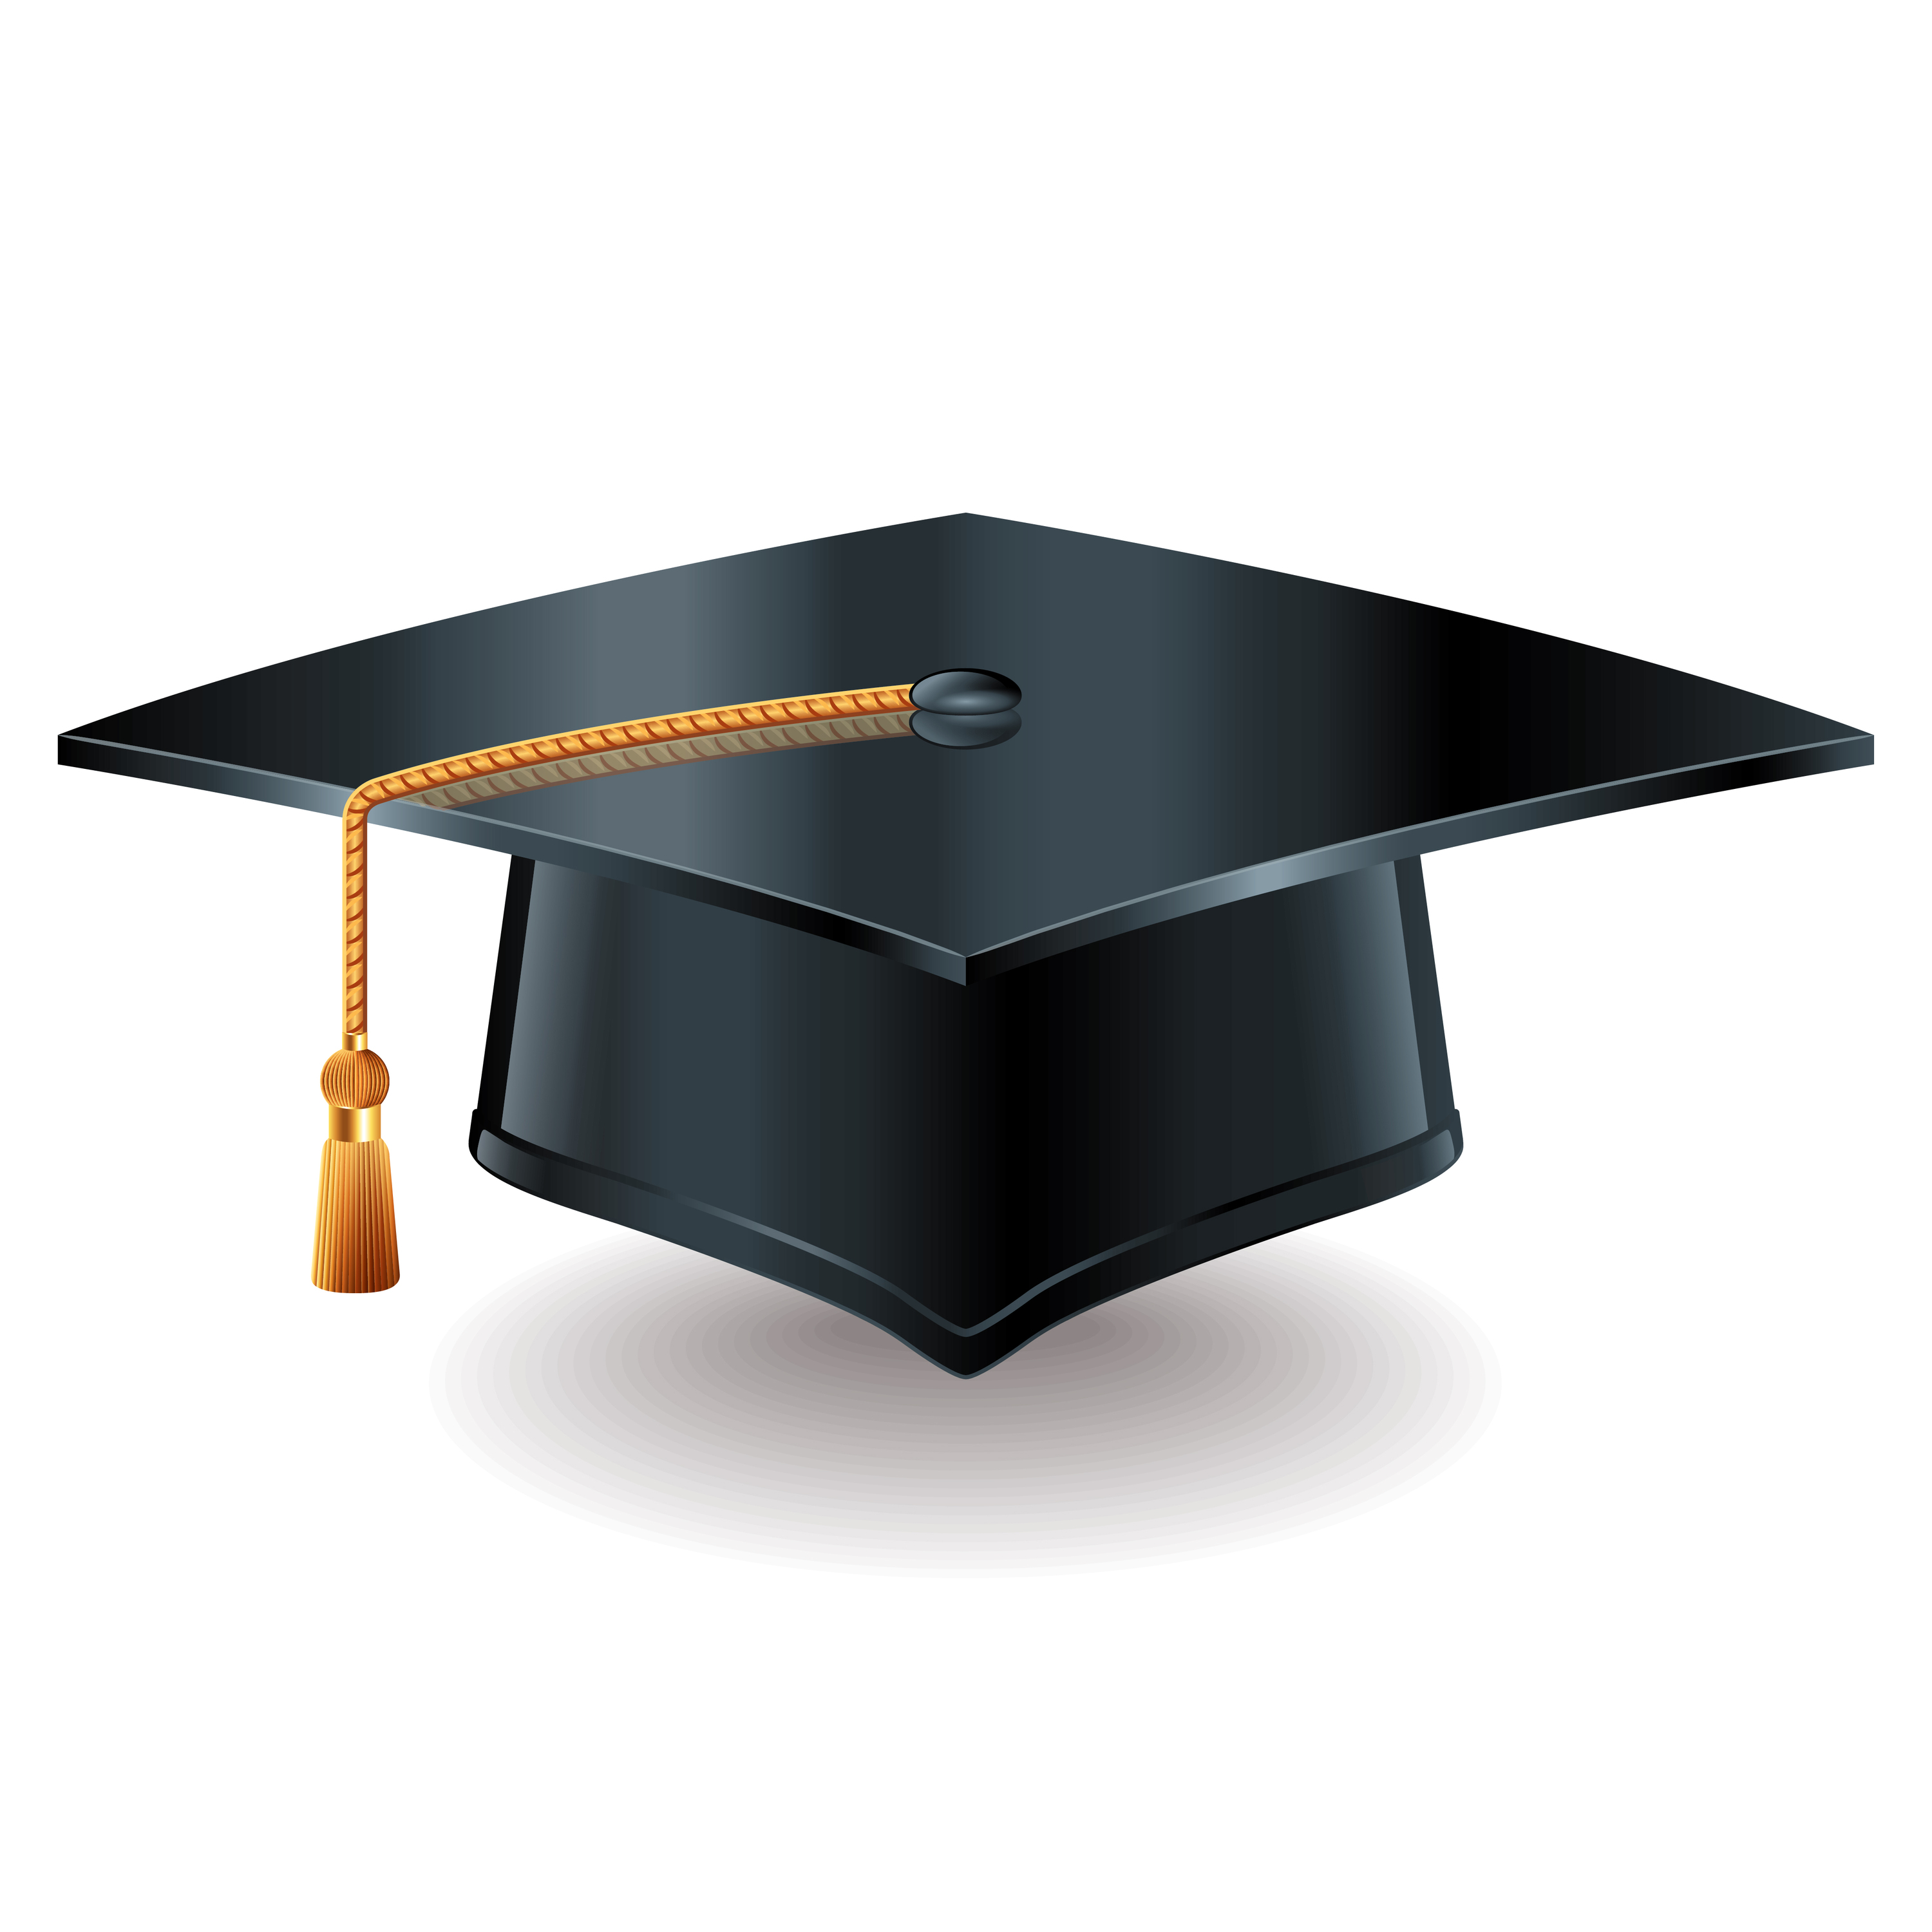 academic cap